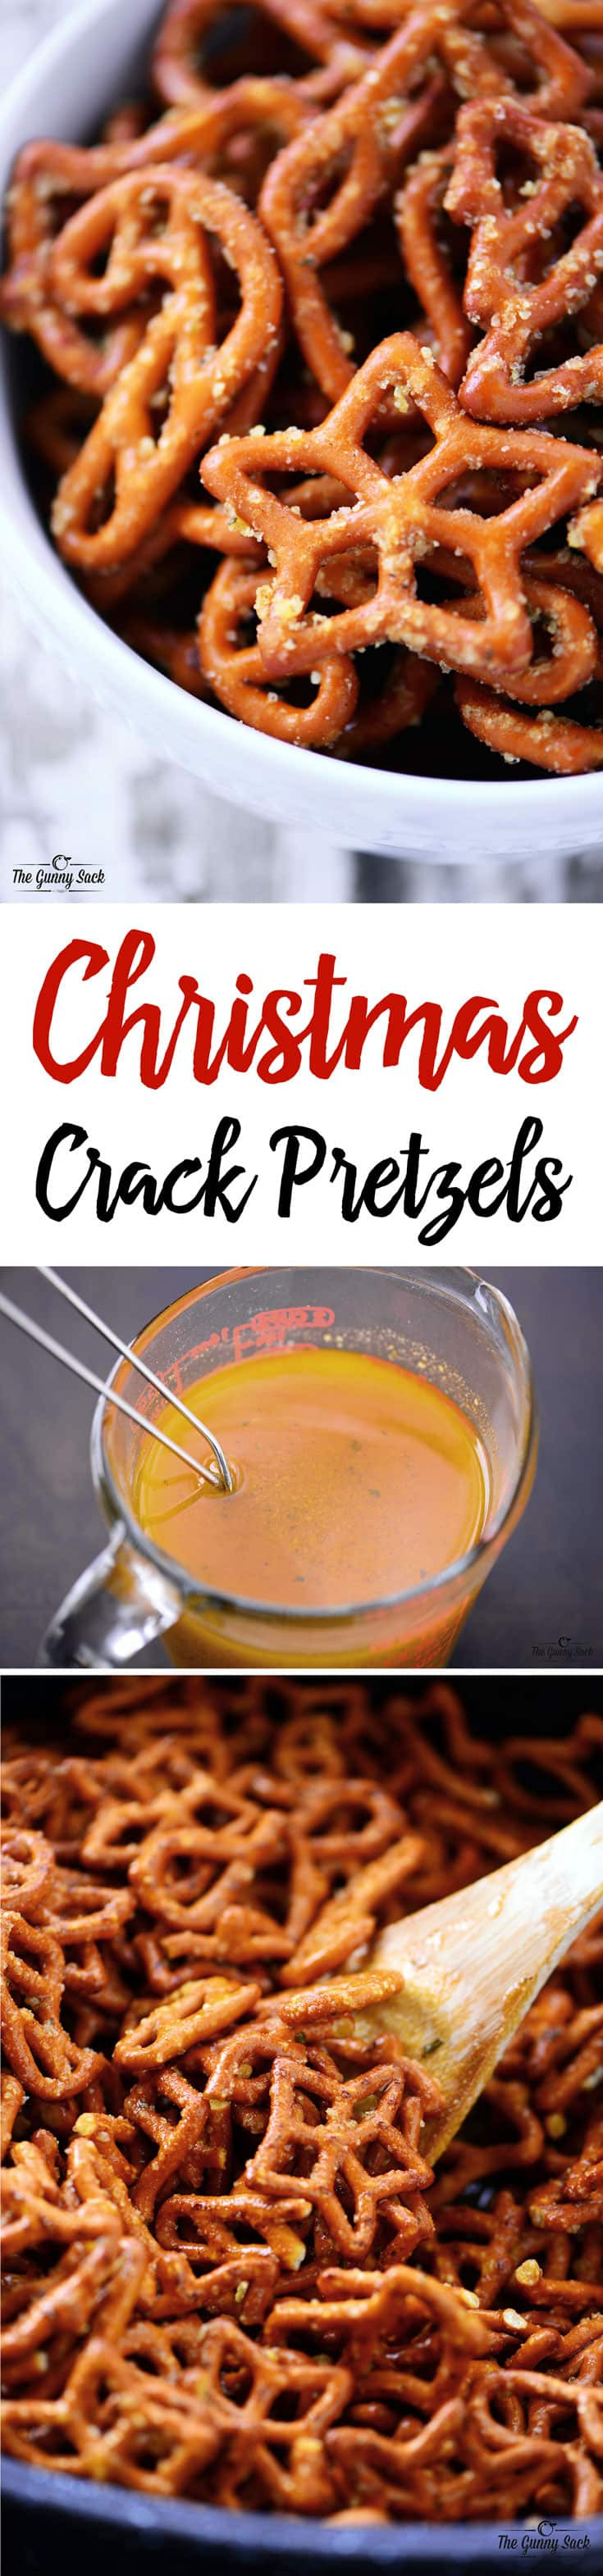 Christmas Crack Recipe With Pretzels
 Christmas Crack Pretzels Recipe The Gunny Sack